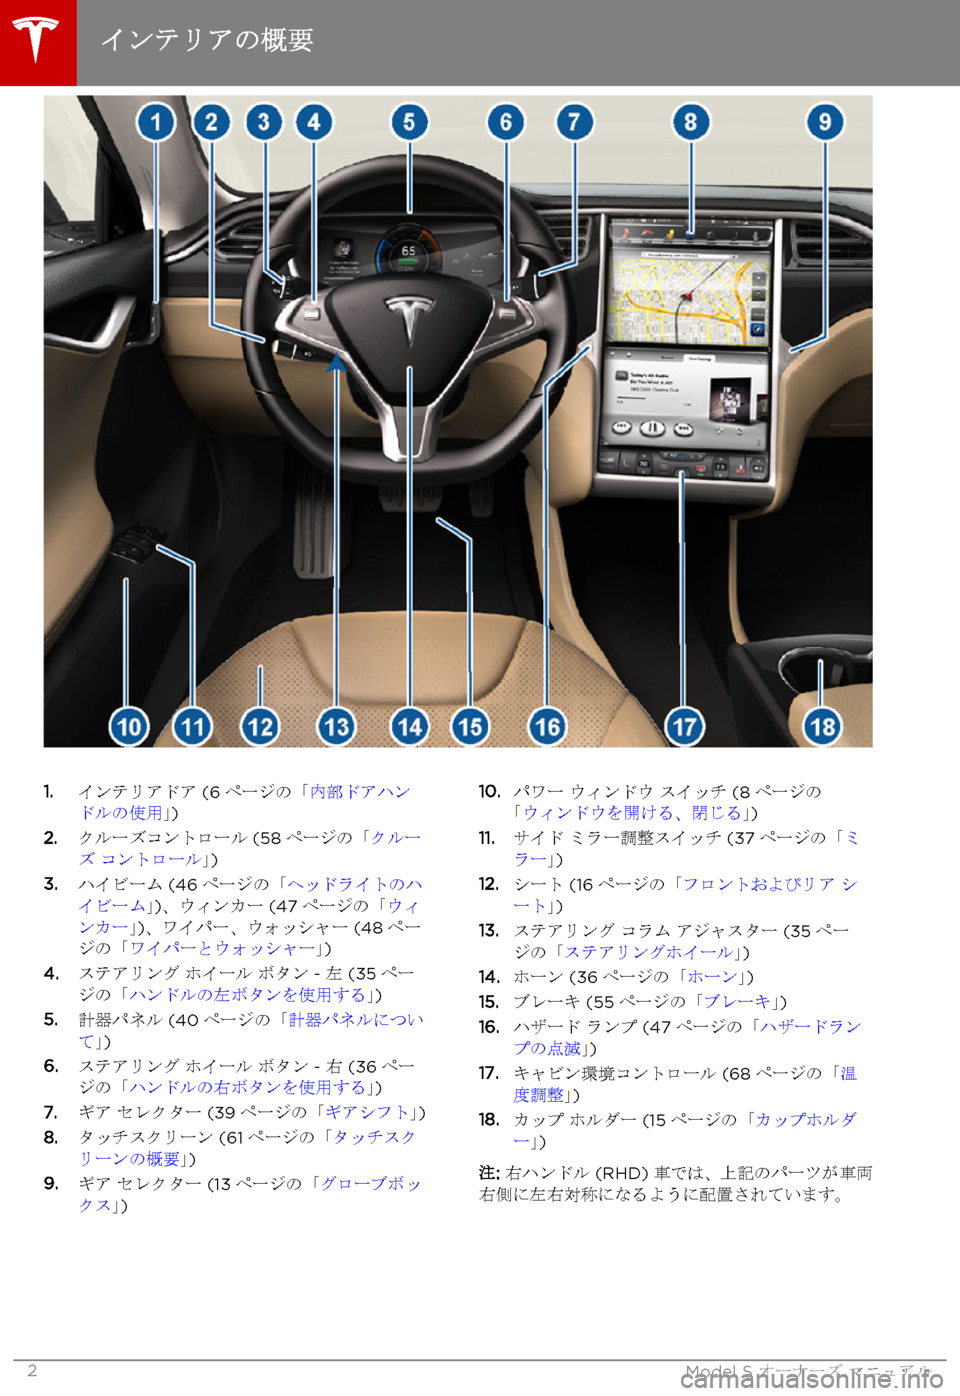 TESLA MODEL S 2015  取扱説明書 (in Japanese)  1.インテリアドア (6ページの「内部ドアハンドルの使用」)2.クルーズコントロール (58ページの「クルーズ コントロール」)3.ハイビーム (46ページの「